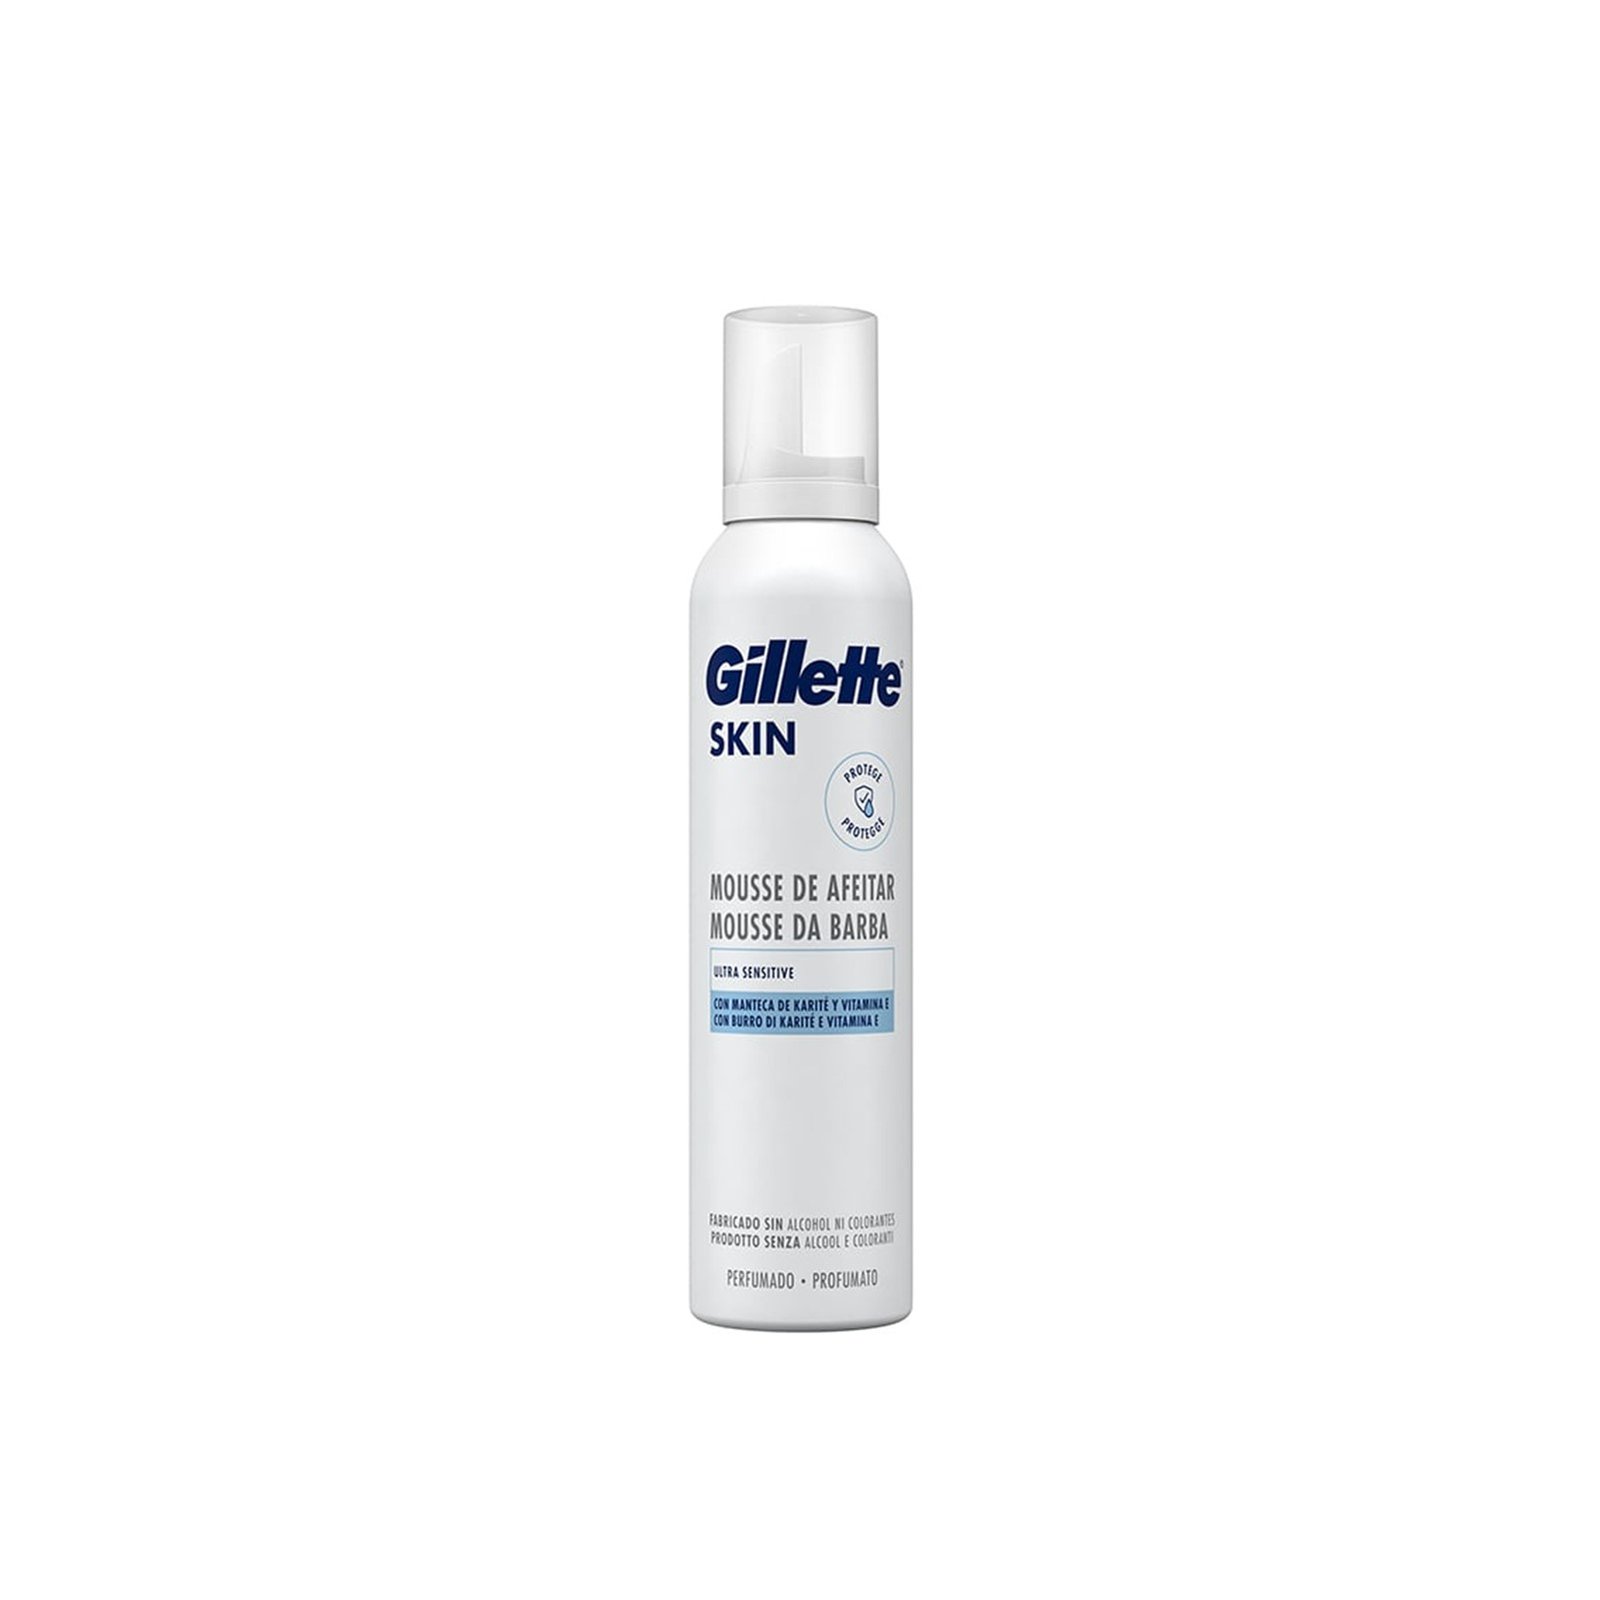 Gillette Skin Shaving Mousse Ultra Sensitive 240ml